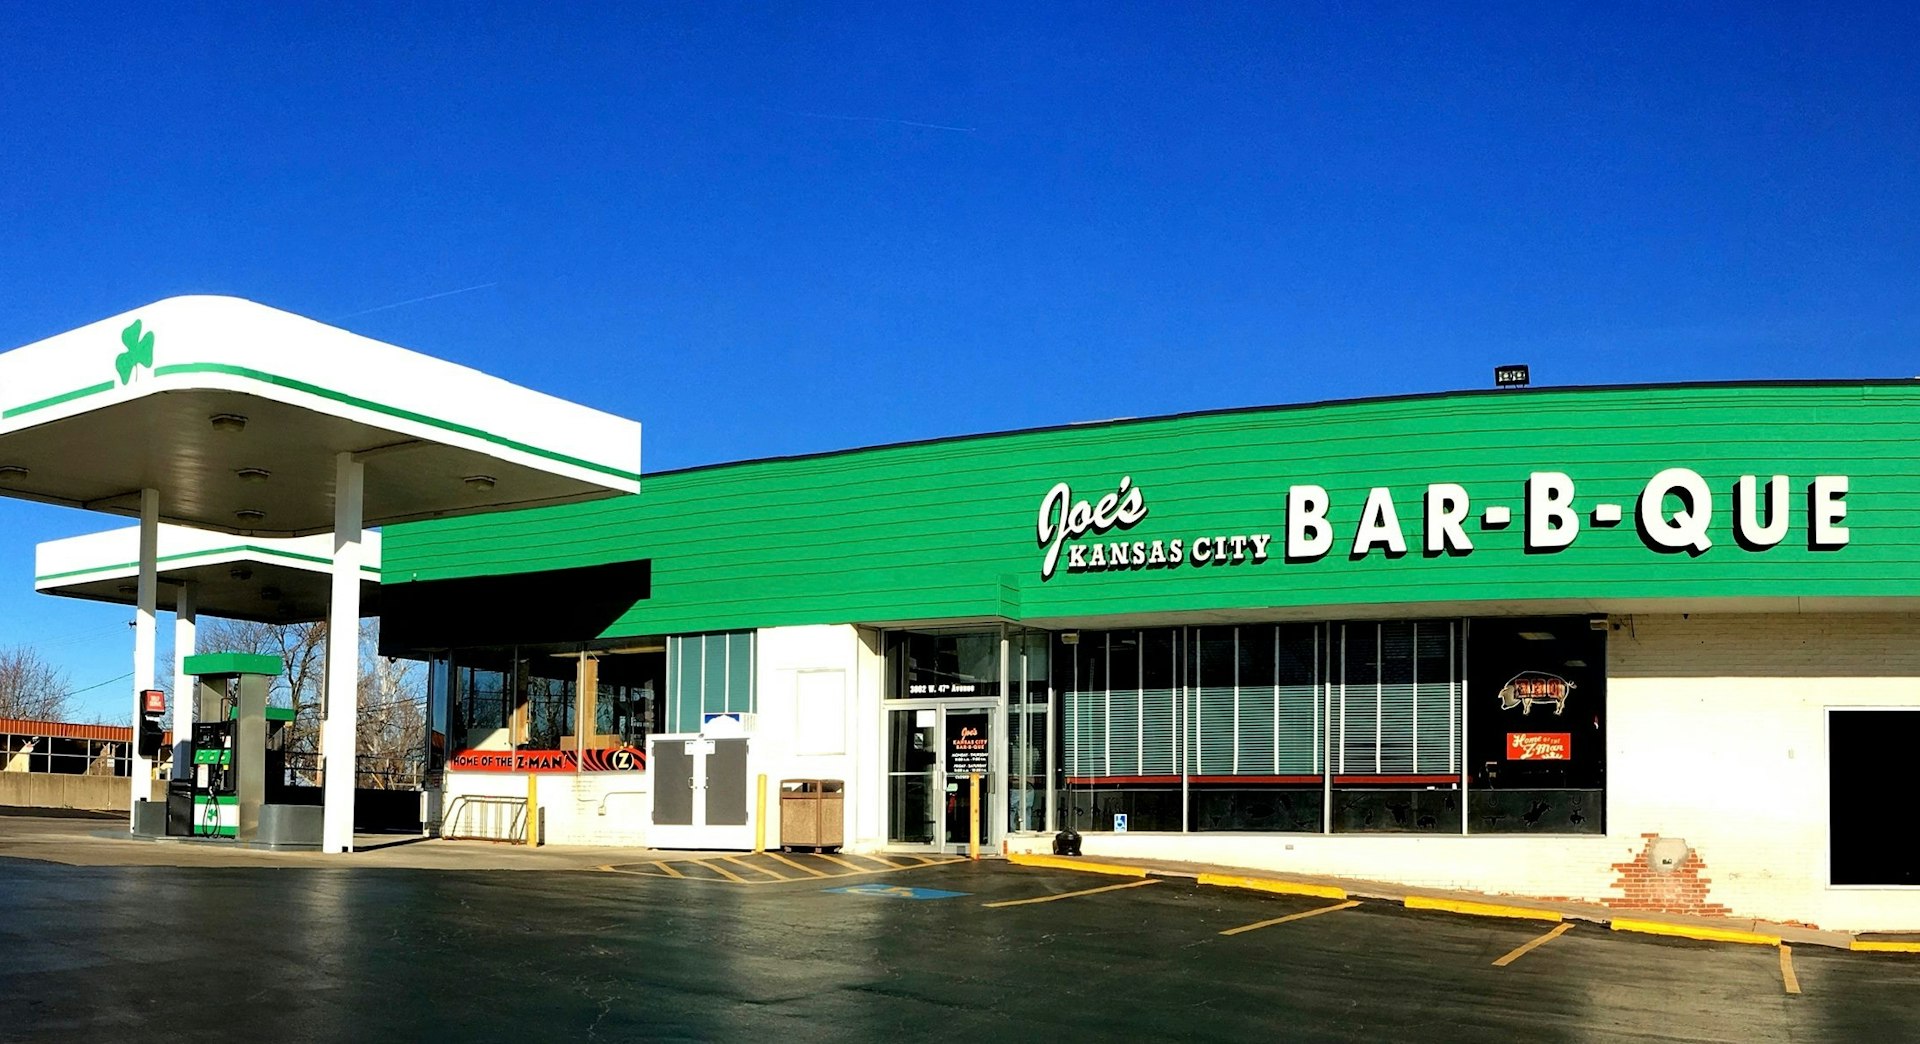 Den ursprungliga bensinstationens plats för Joe's Kansas City Bar-B-Que